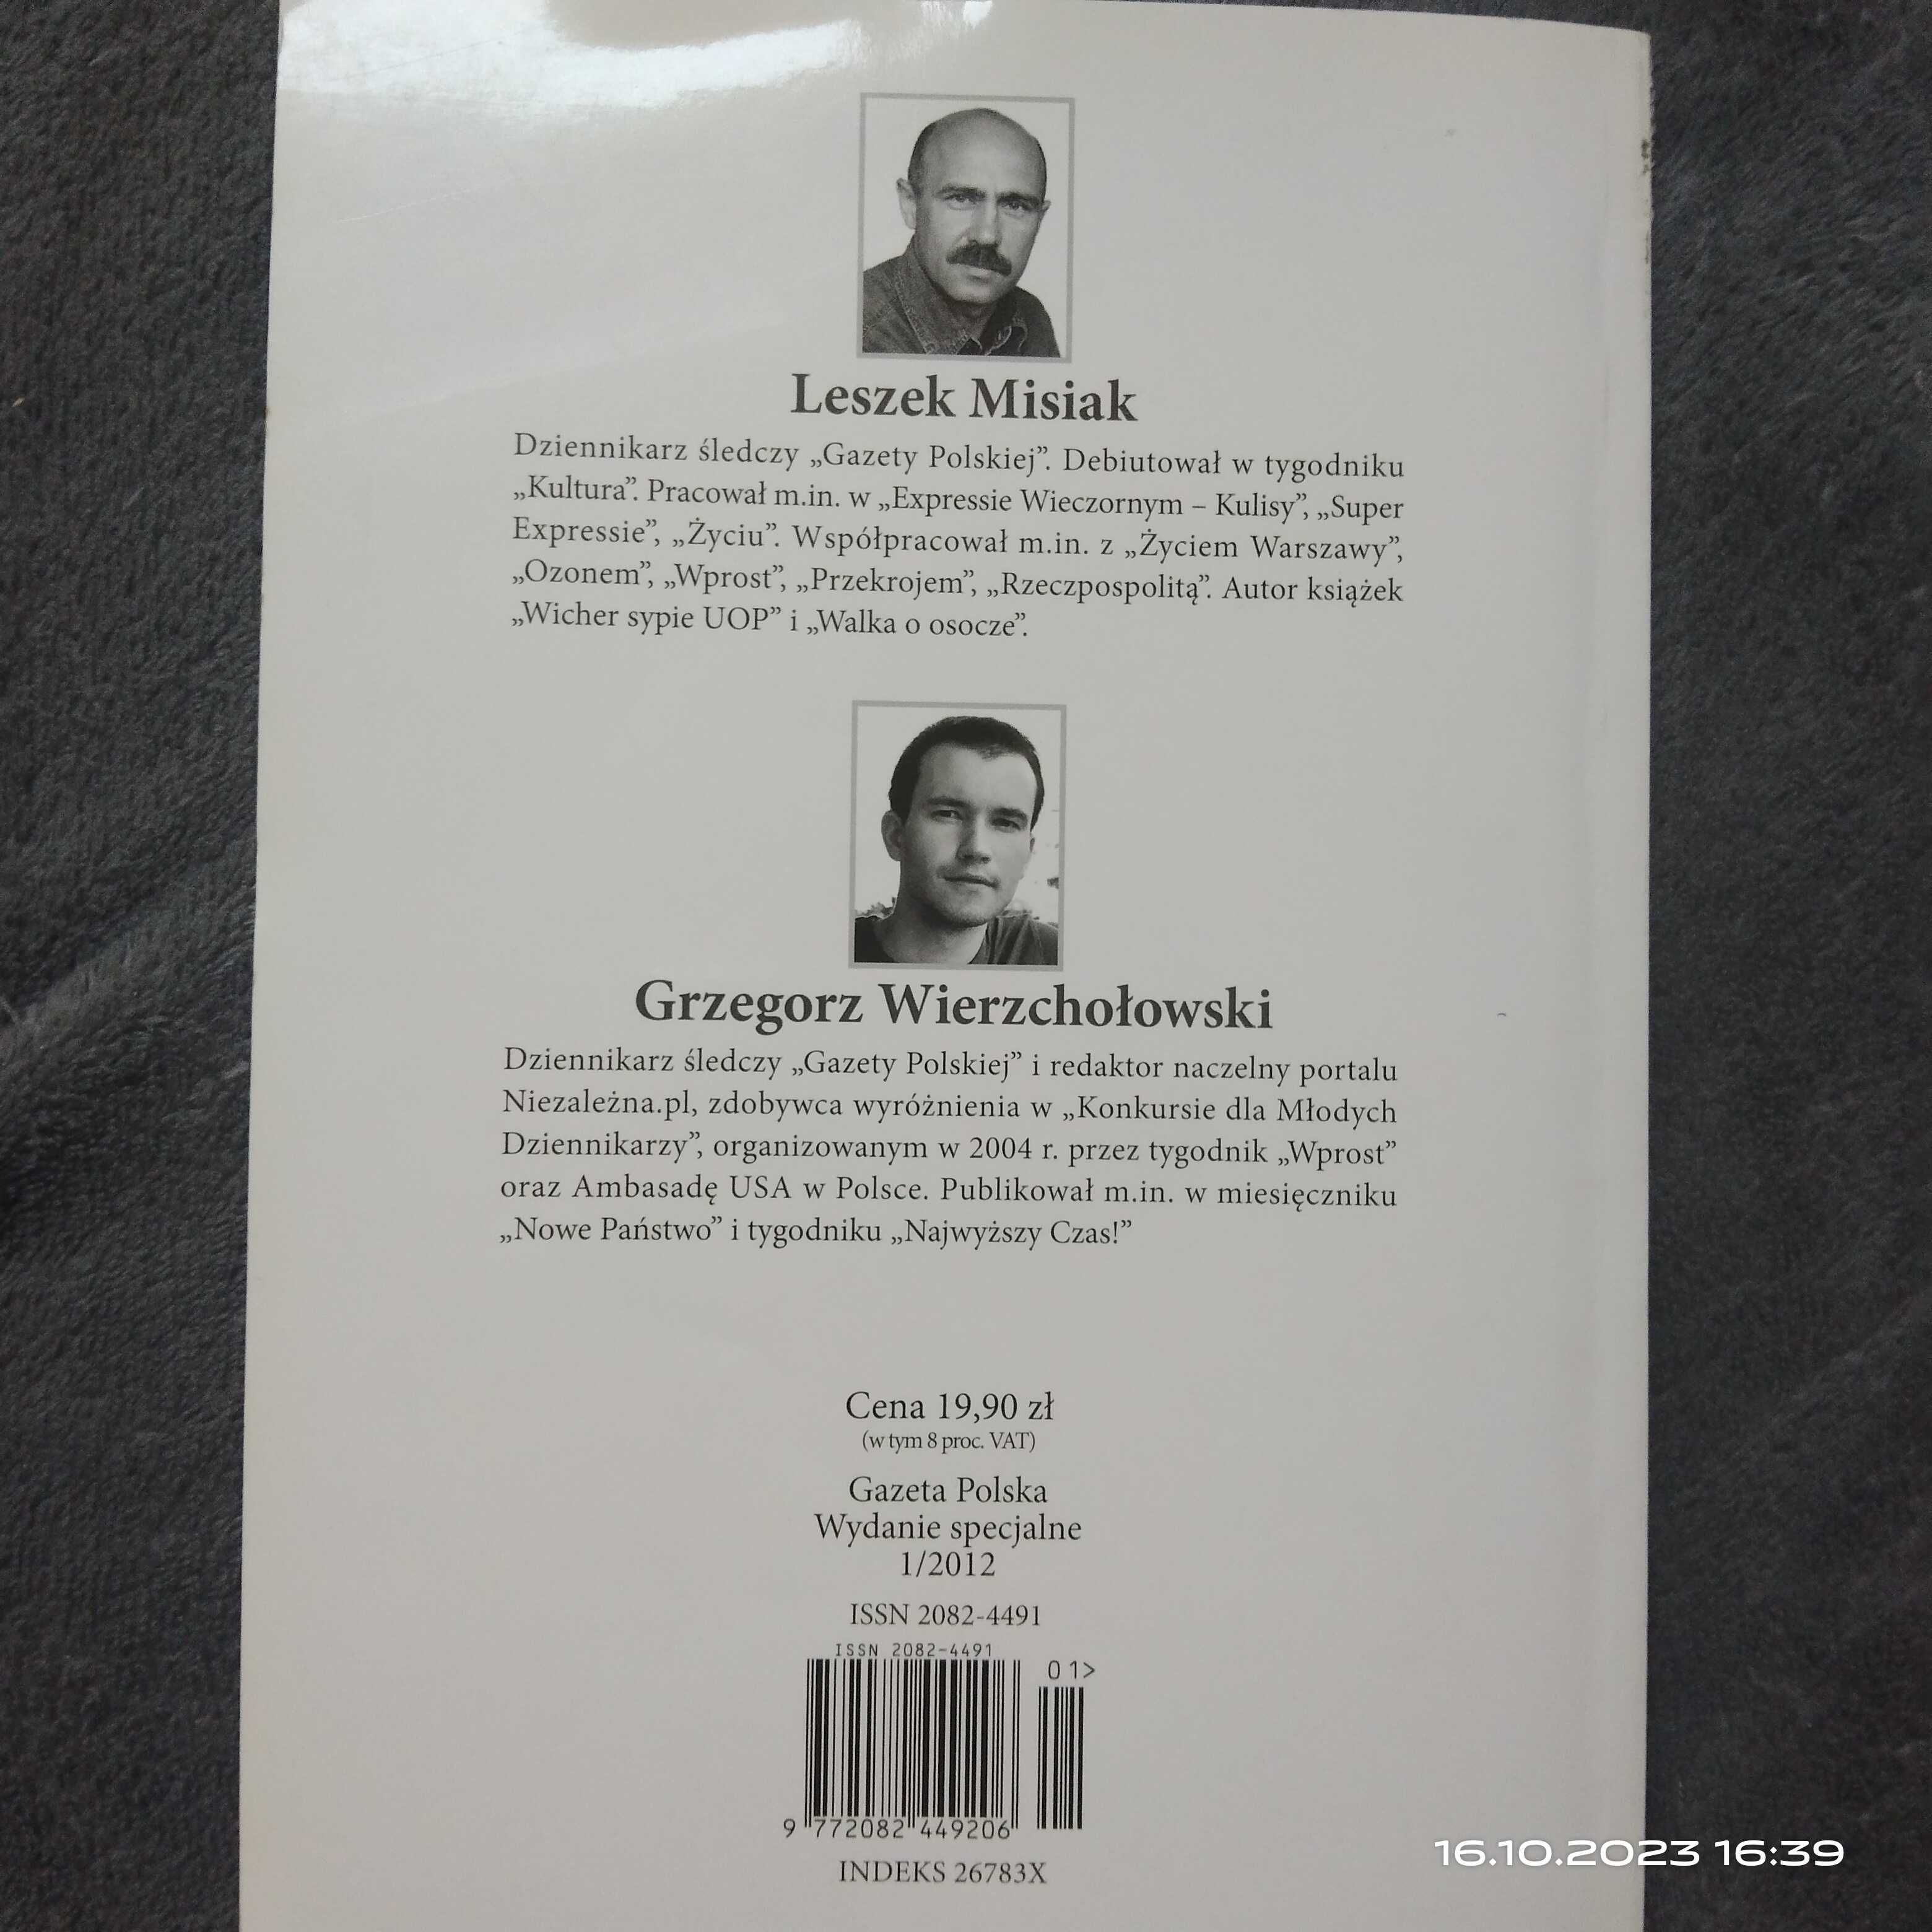 Książka "Musieli zginąć" Leszek Misiak, Grzegorz Wierzchołowski